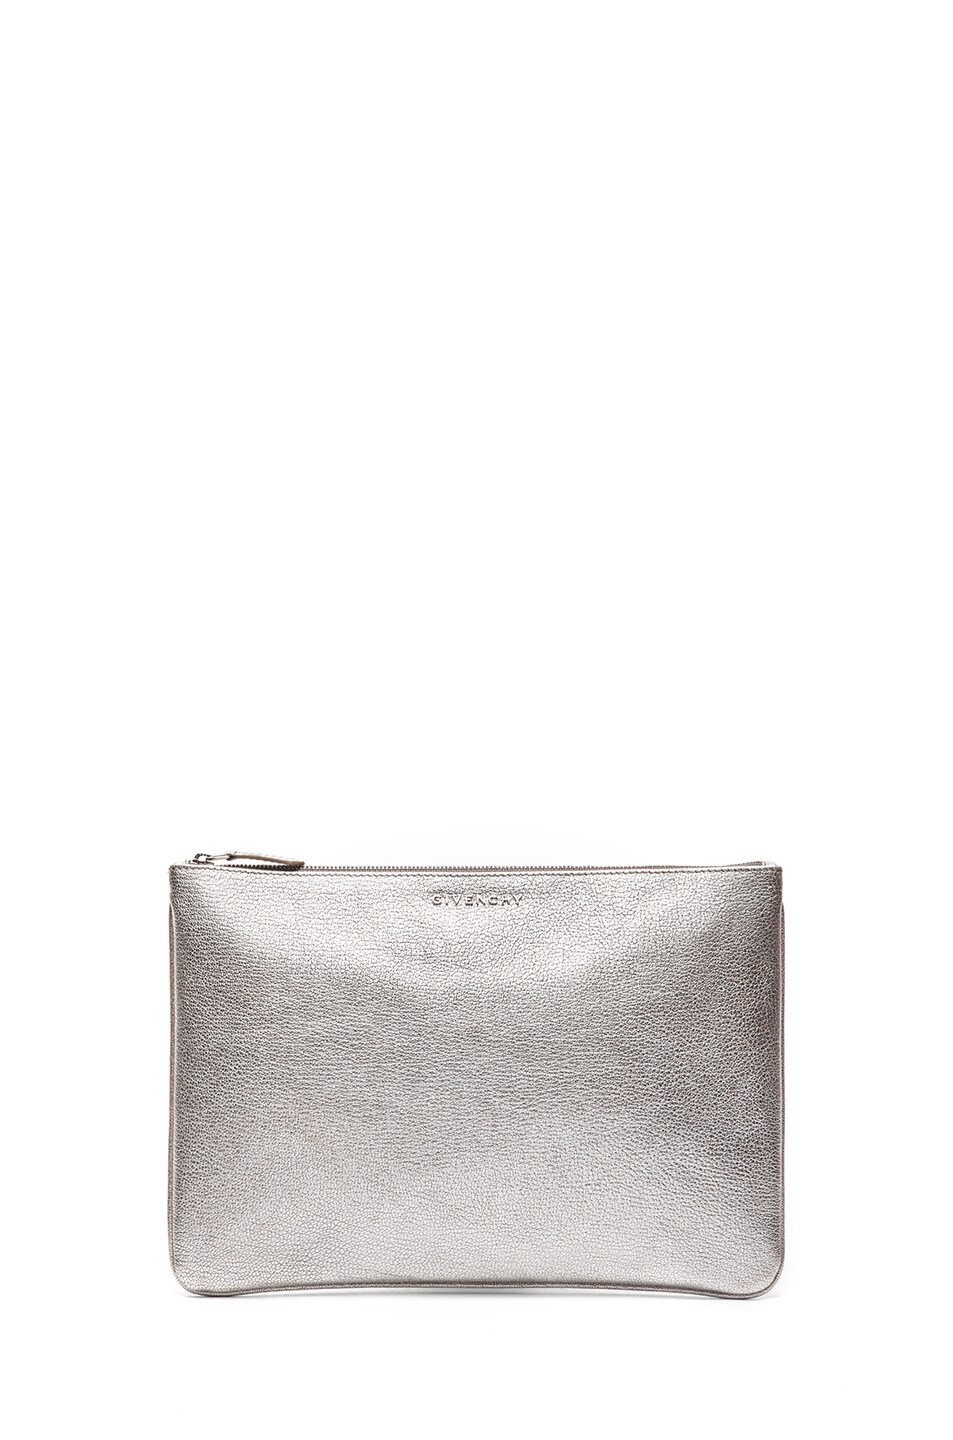 Givenchy Medium Pouch in Silver | FWRD